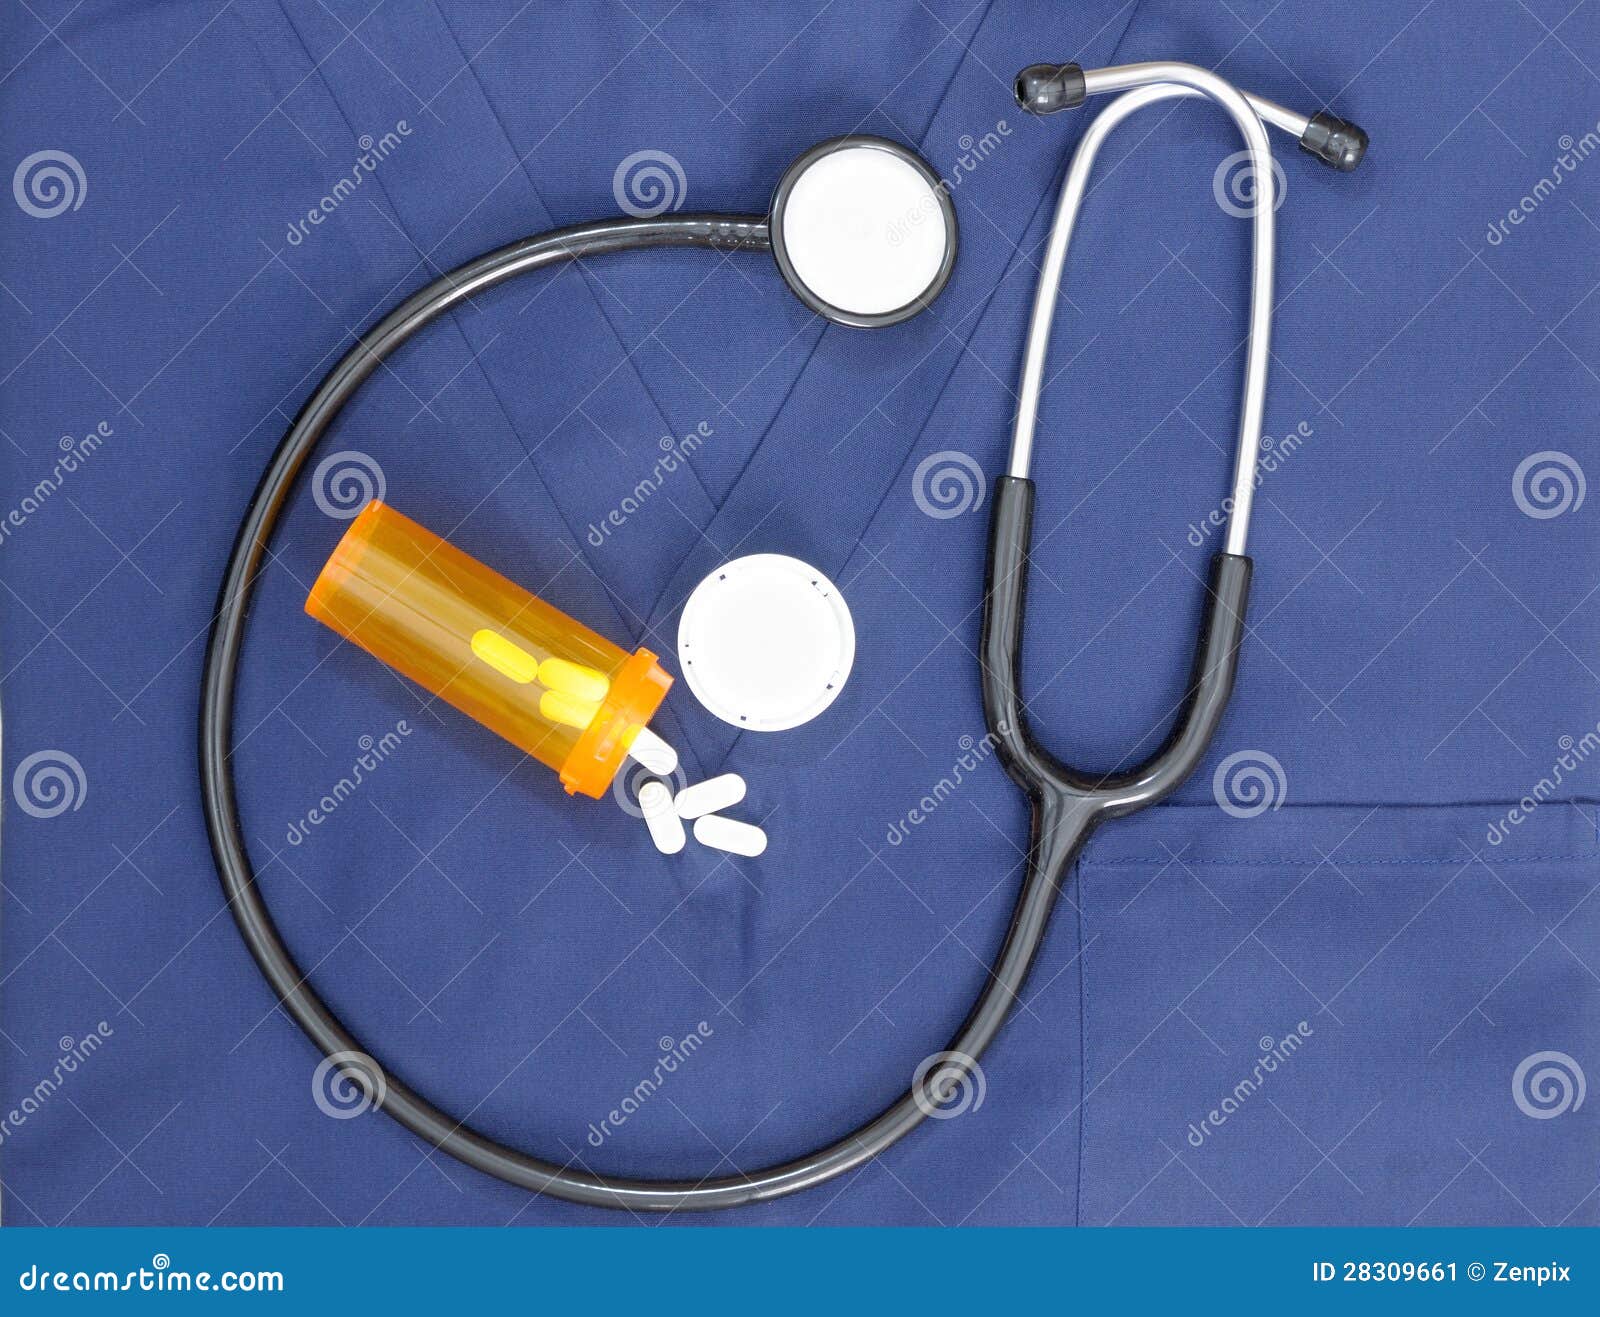 El concepto médico con el estetoscopio friega y las píldoras como fondo